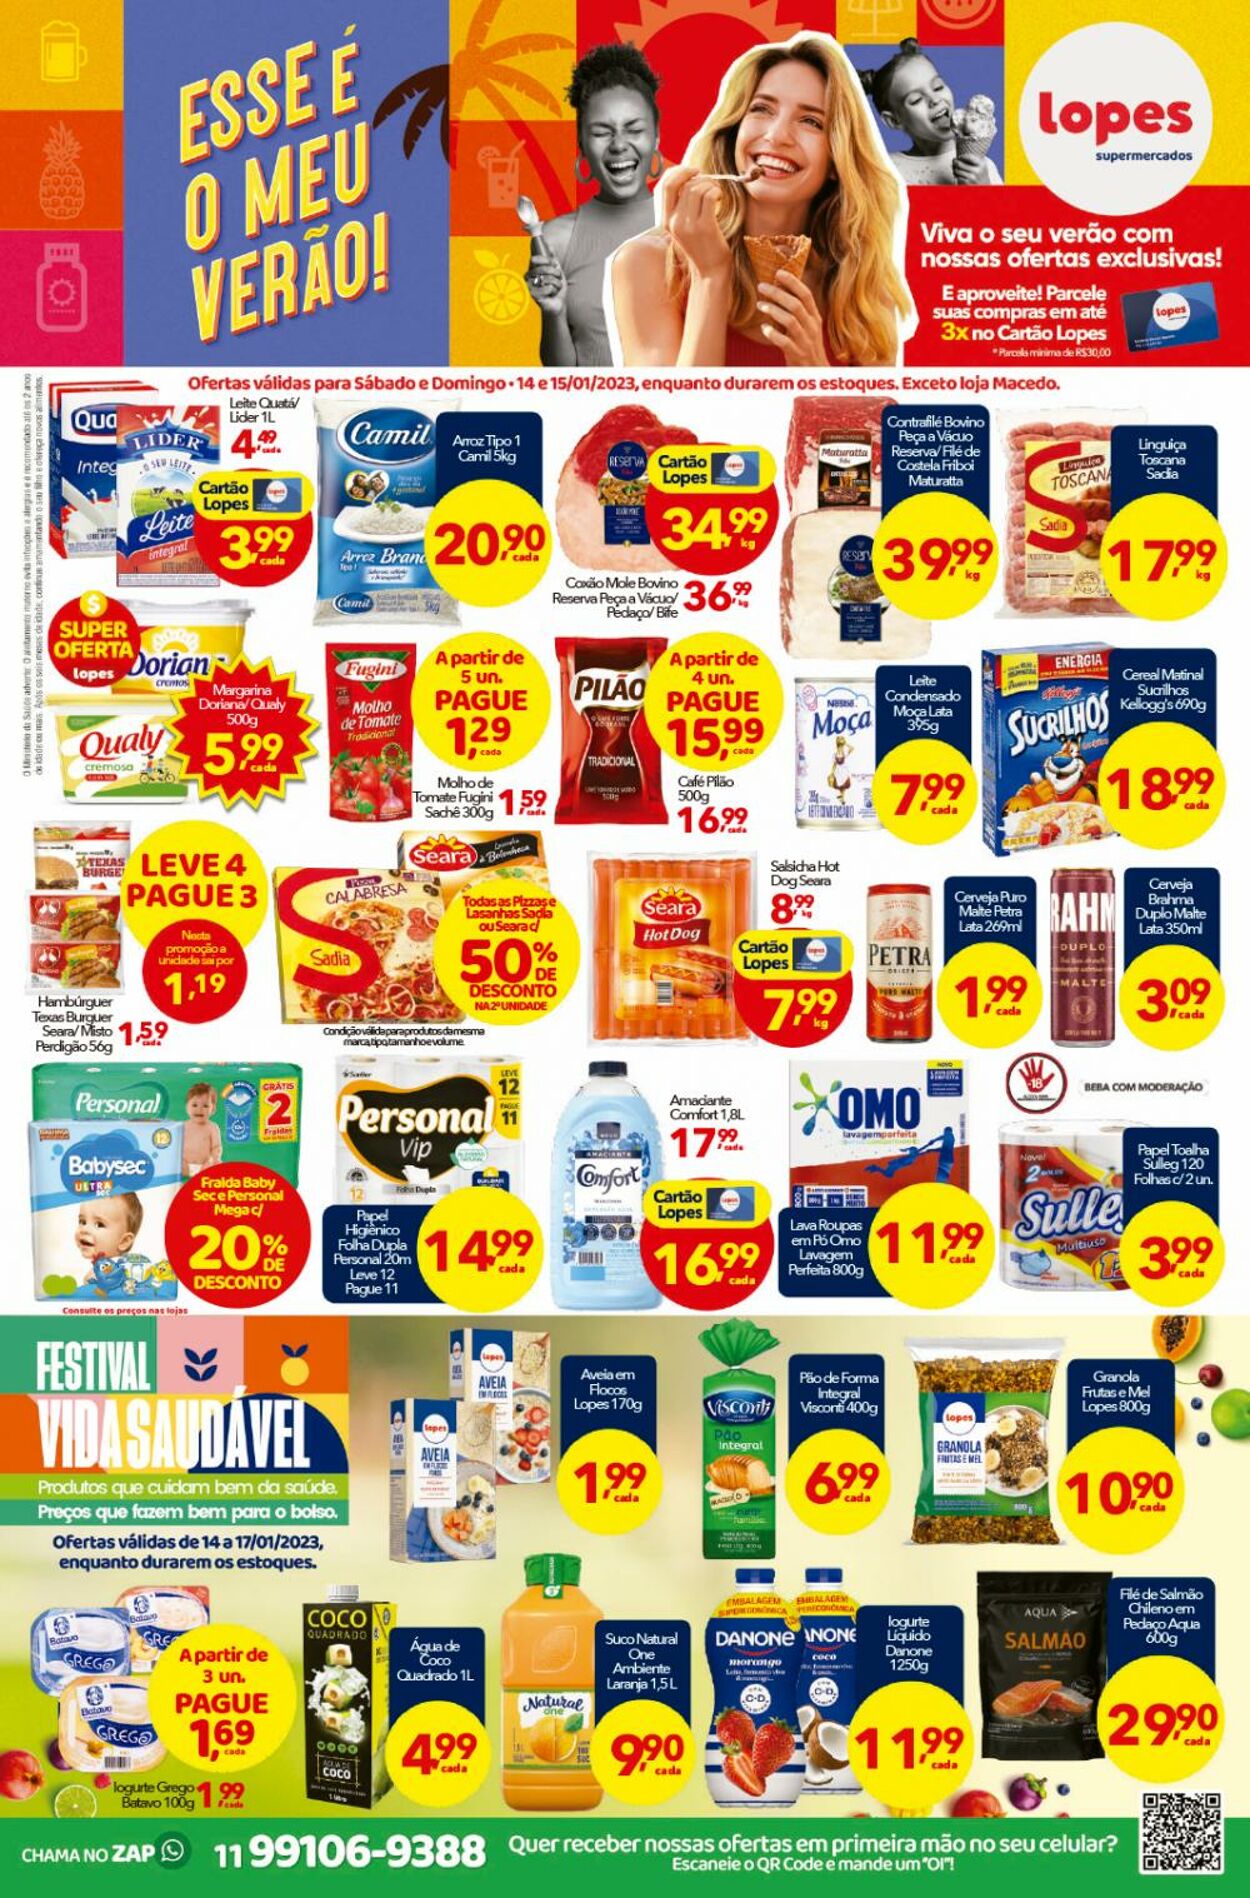 Folheto Lopes Supermercados 14.01.2023-17.01.2023